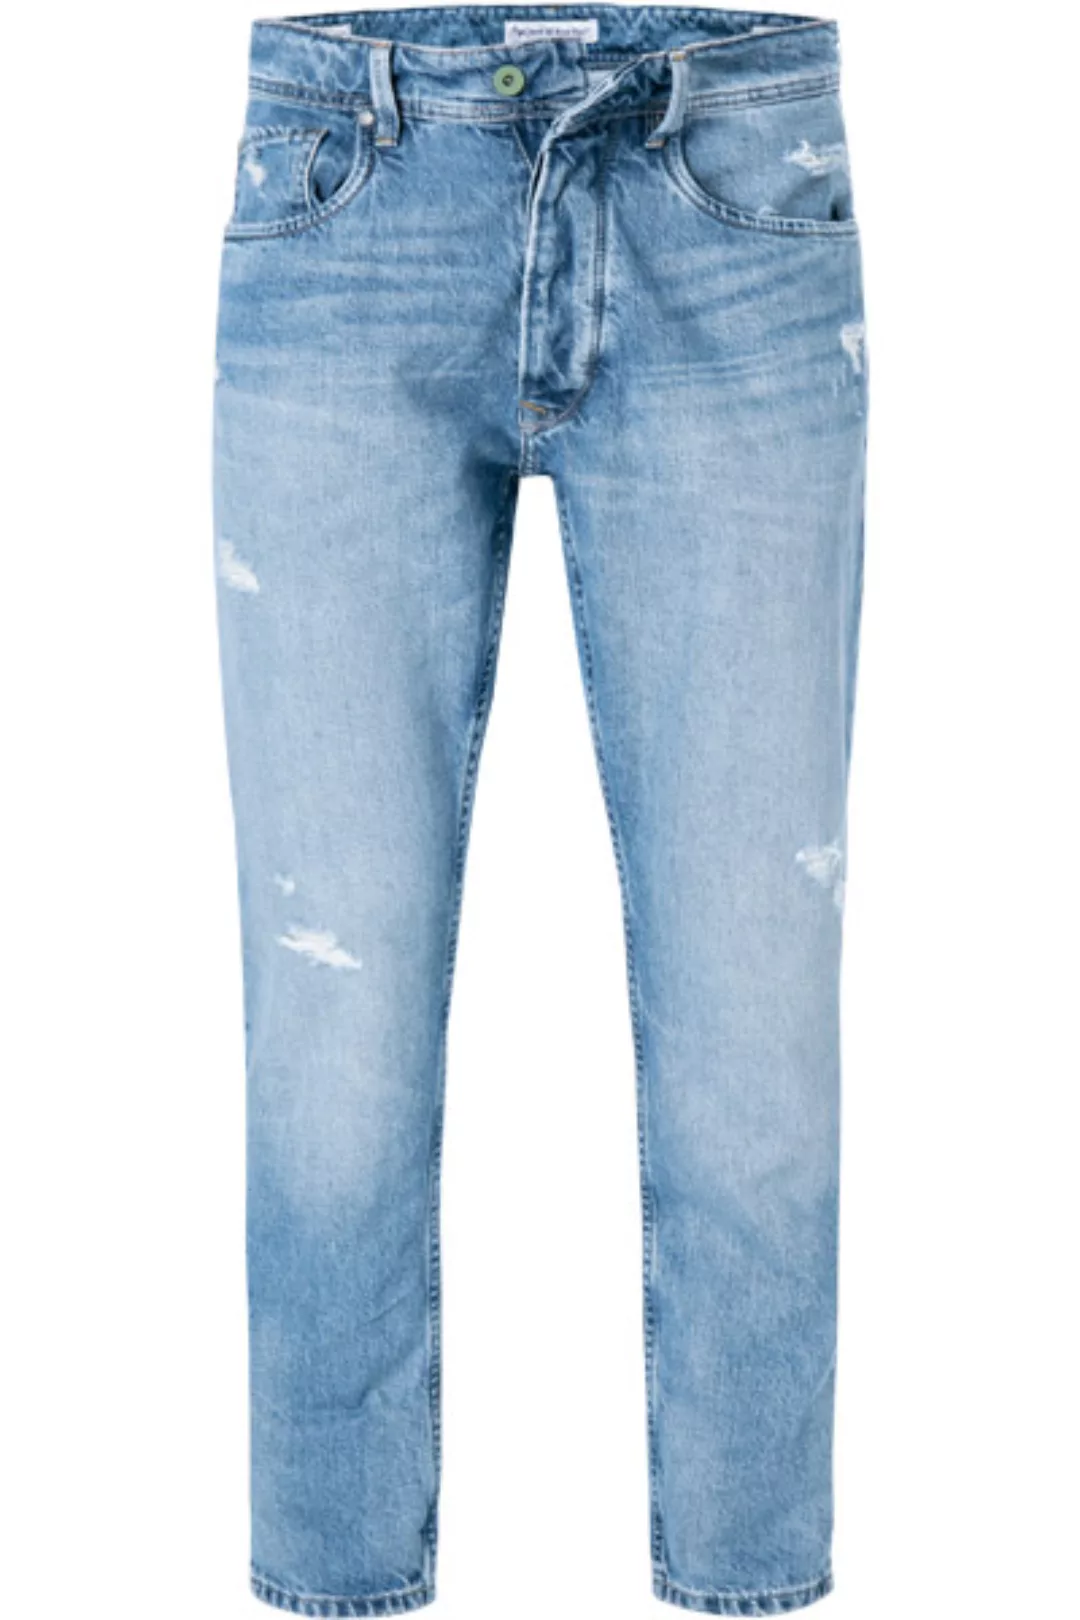 Pepe Jeans Callen Crop PM205117WI0R/000 günstig online kaufen